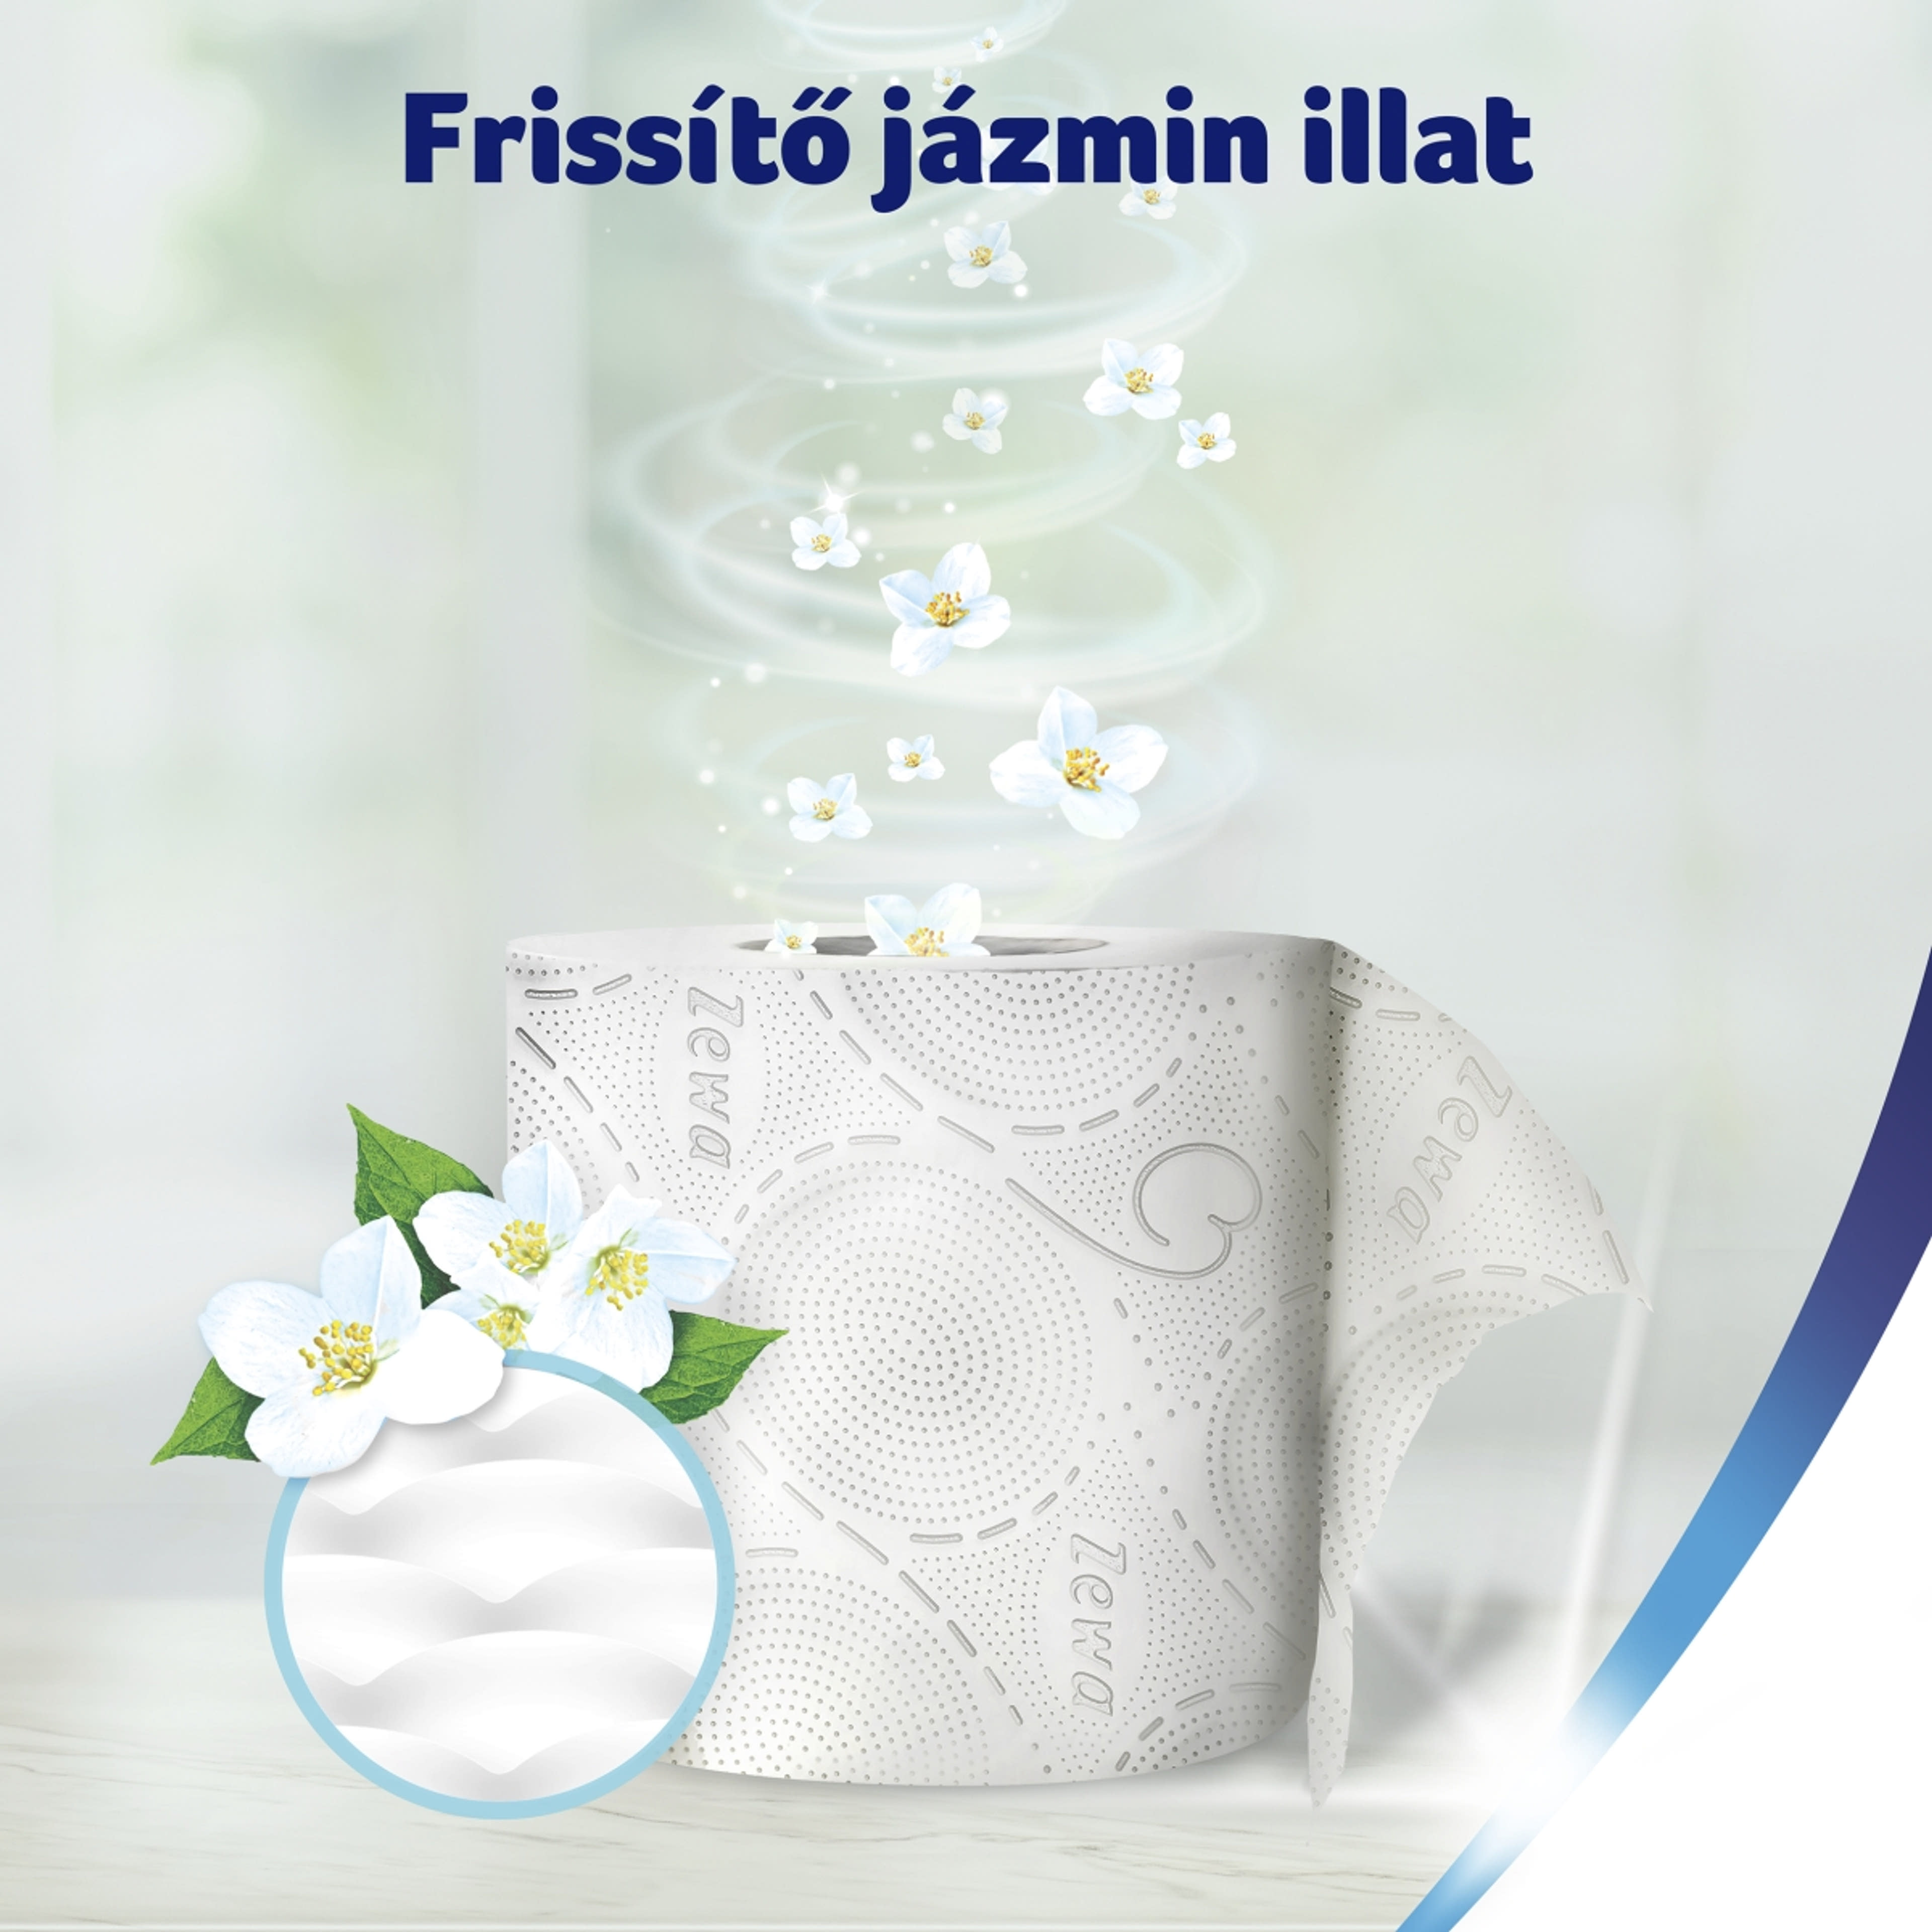 Zewa Deluxe Jasmine Blossom 3 rétegű toalettpapír - 16 tekercs-5